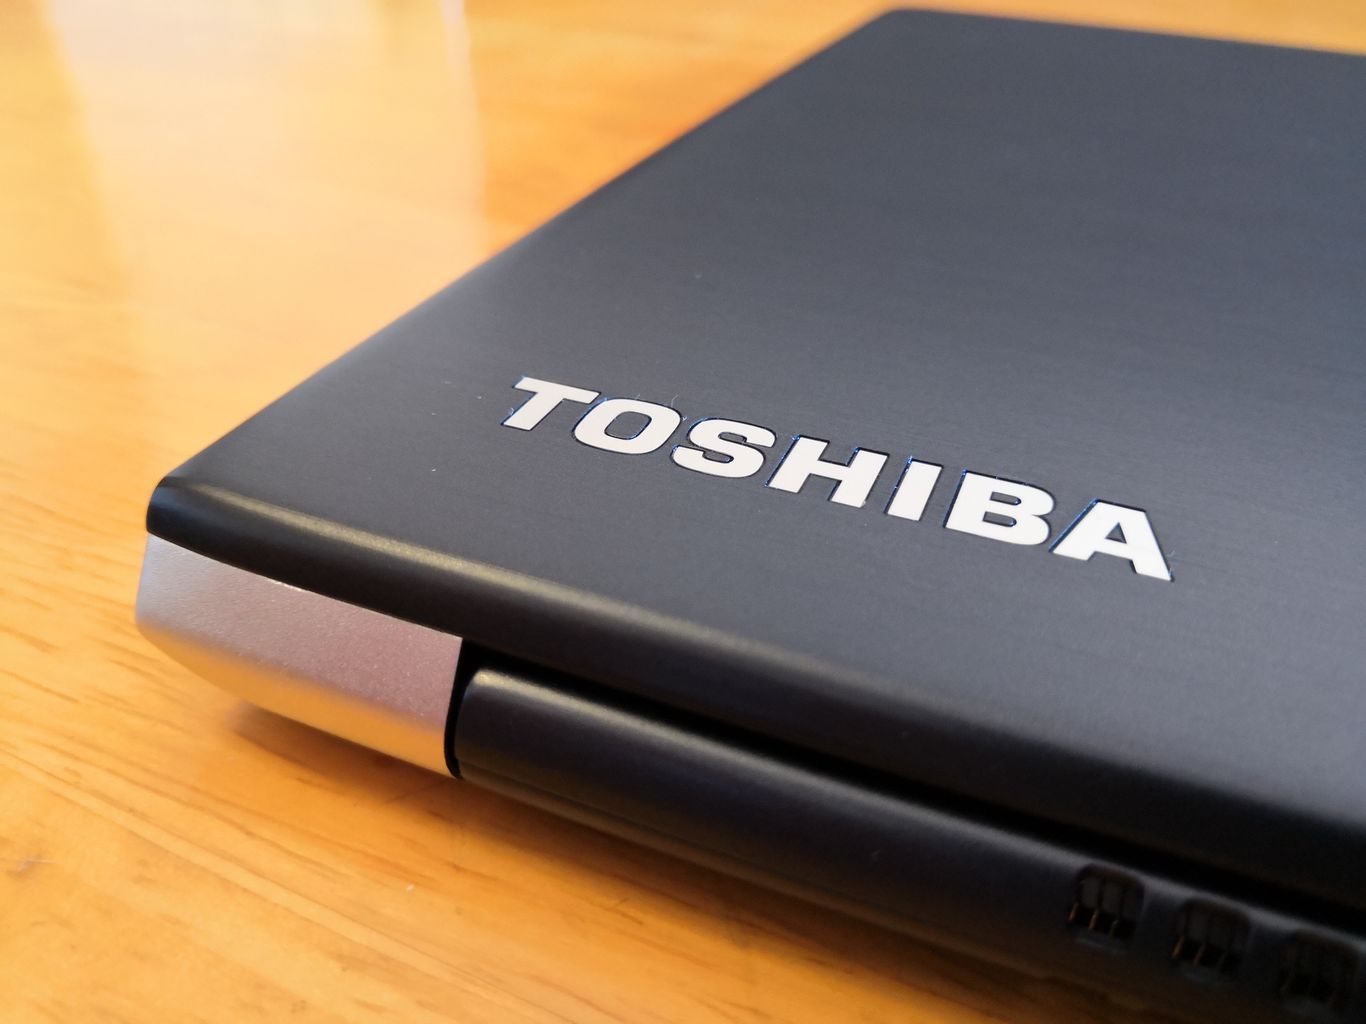 Toshiba Portege X30 detalle